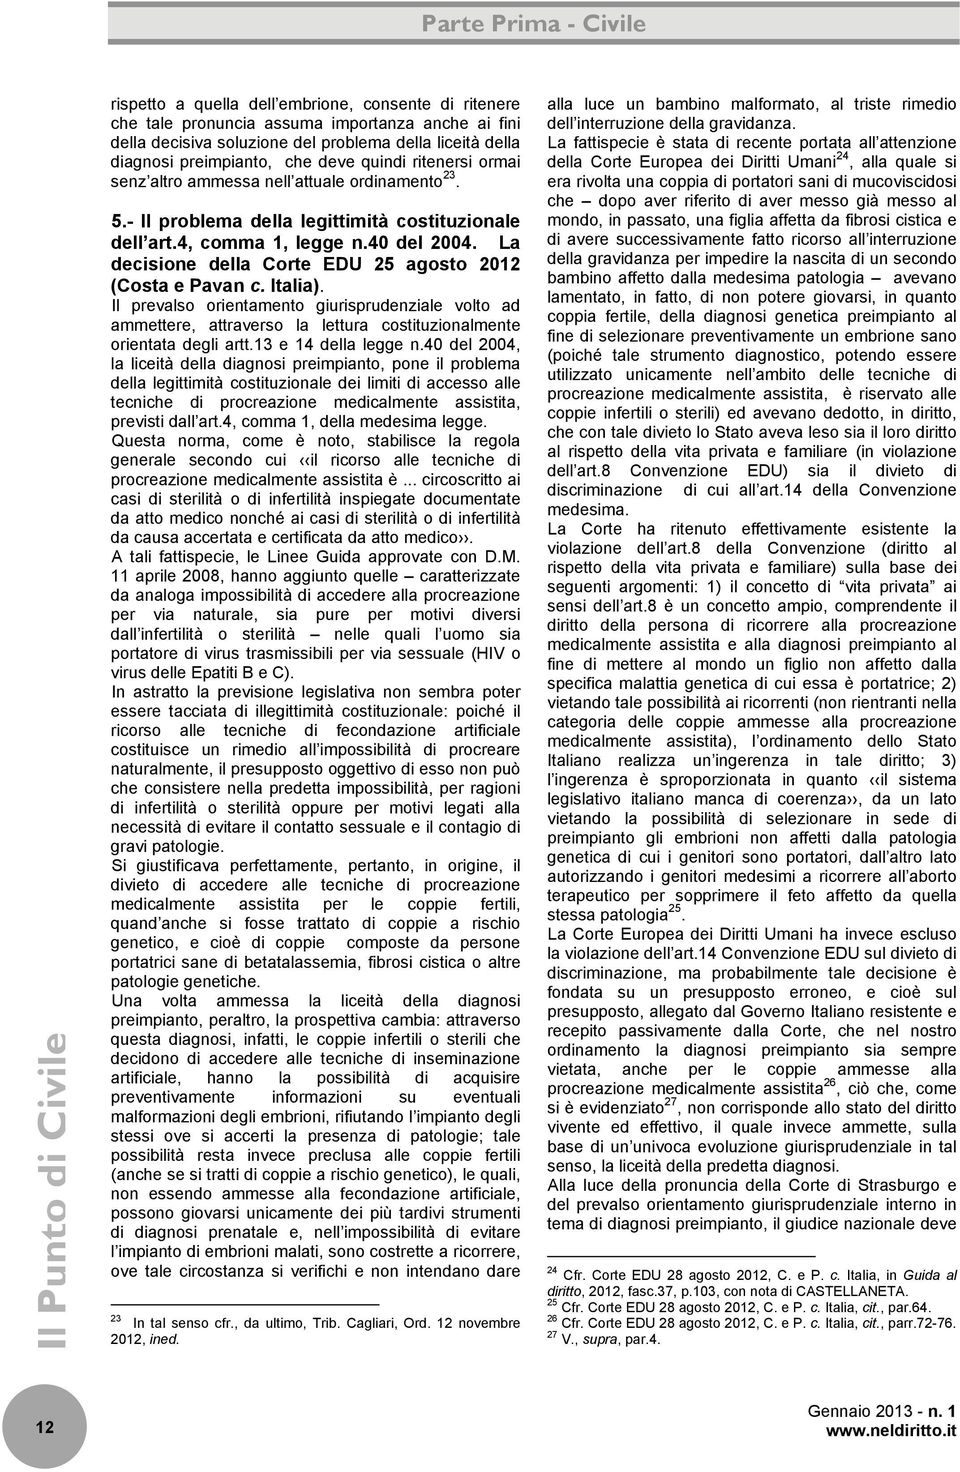 La decisione della Corte EDU 25 agosto 2012 (Costa e Pavan c. Italia). Il prevalso orientamento giurisprudenziale volto ad ammettere, attraverso la lettura costituzionalmente orientata degli artt.